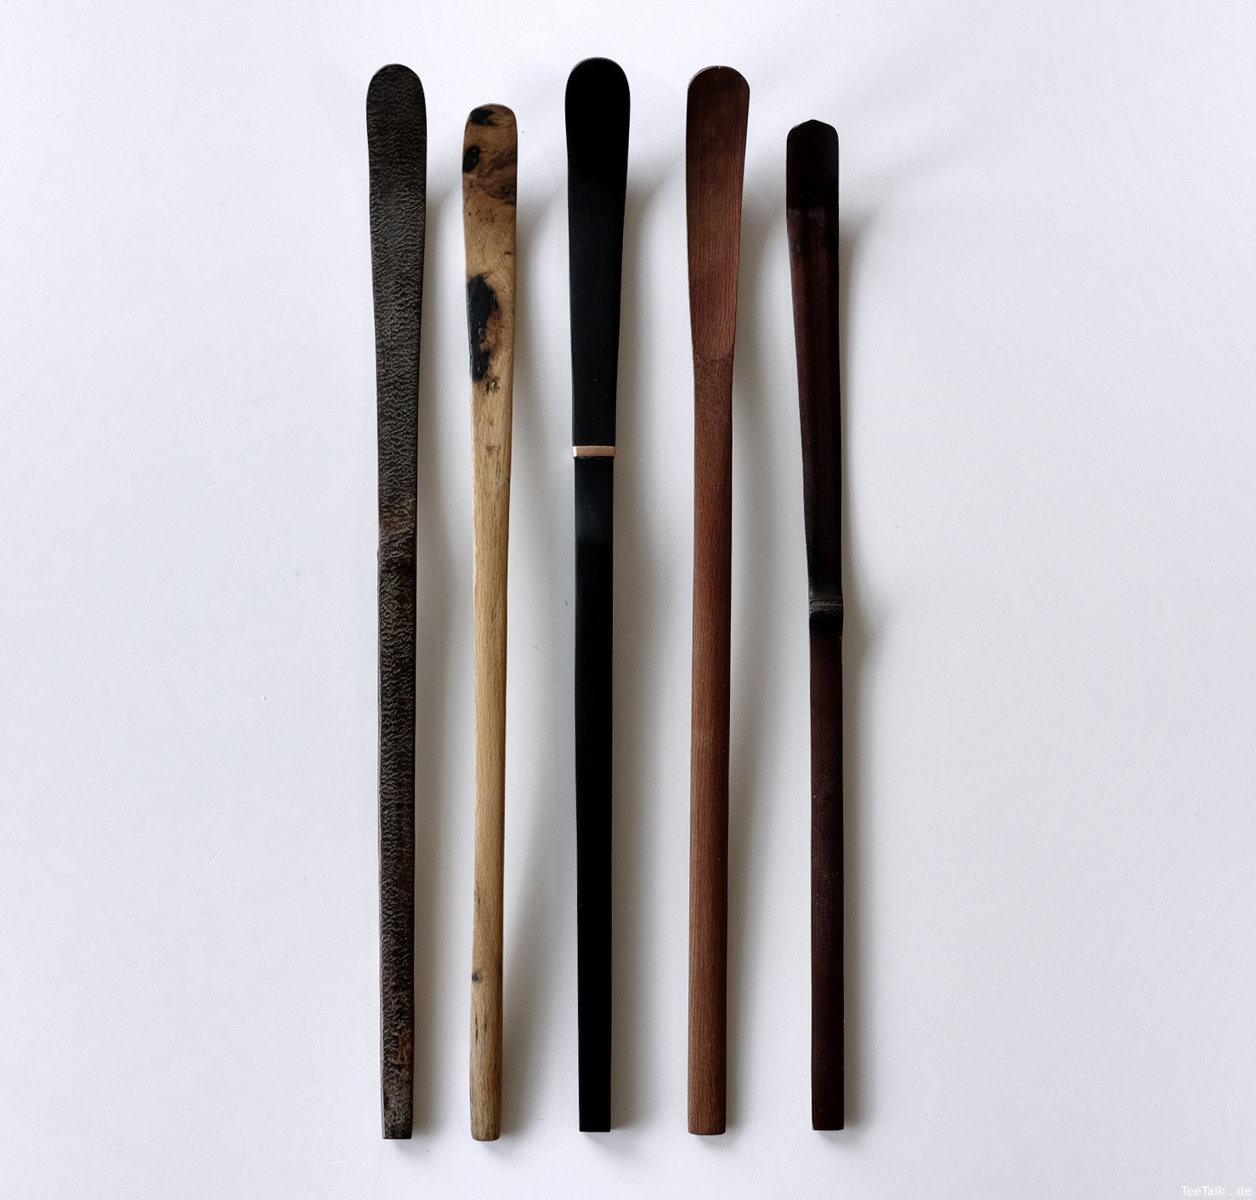 Chashakus: Kirschrinde/holz (?), Kakiholz, Gagat (fossiles Holz), unbekannt, dunkler Bambus.